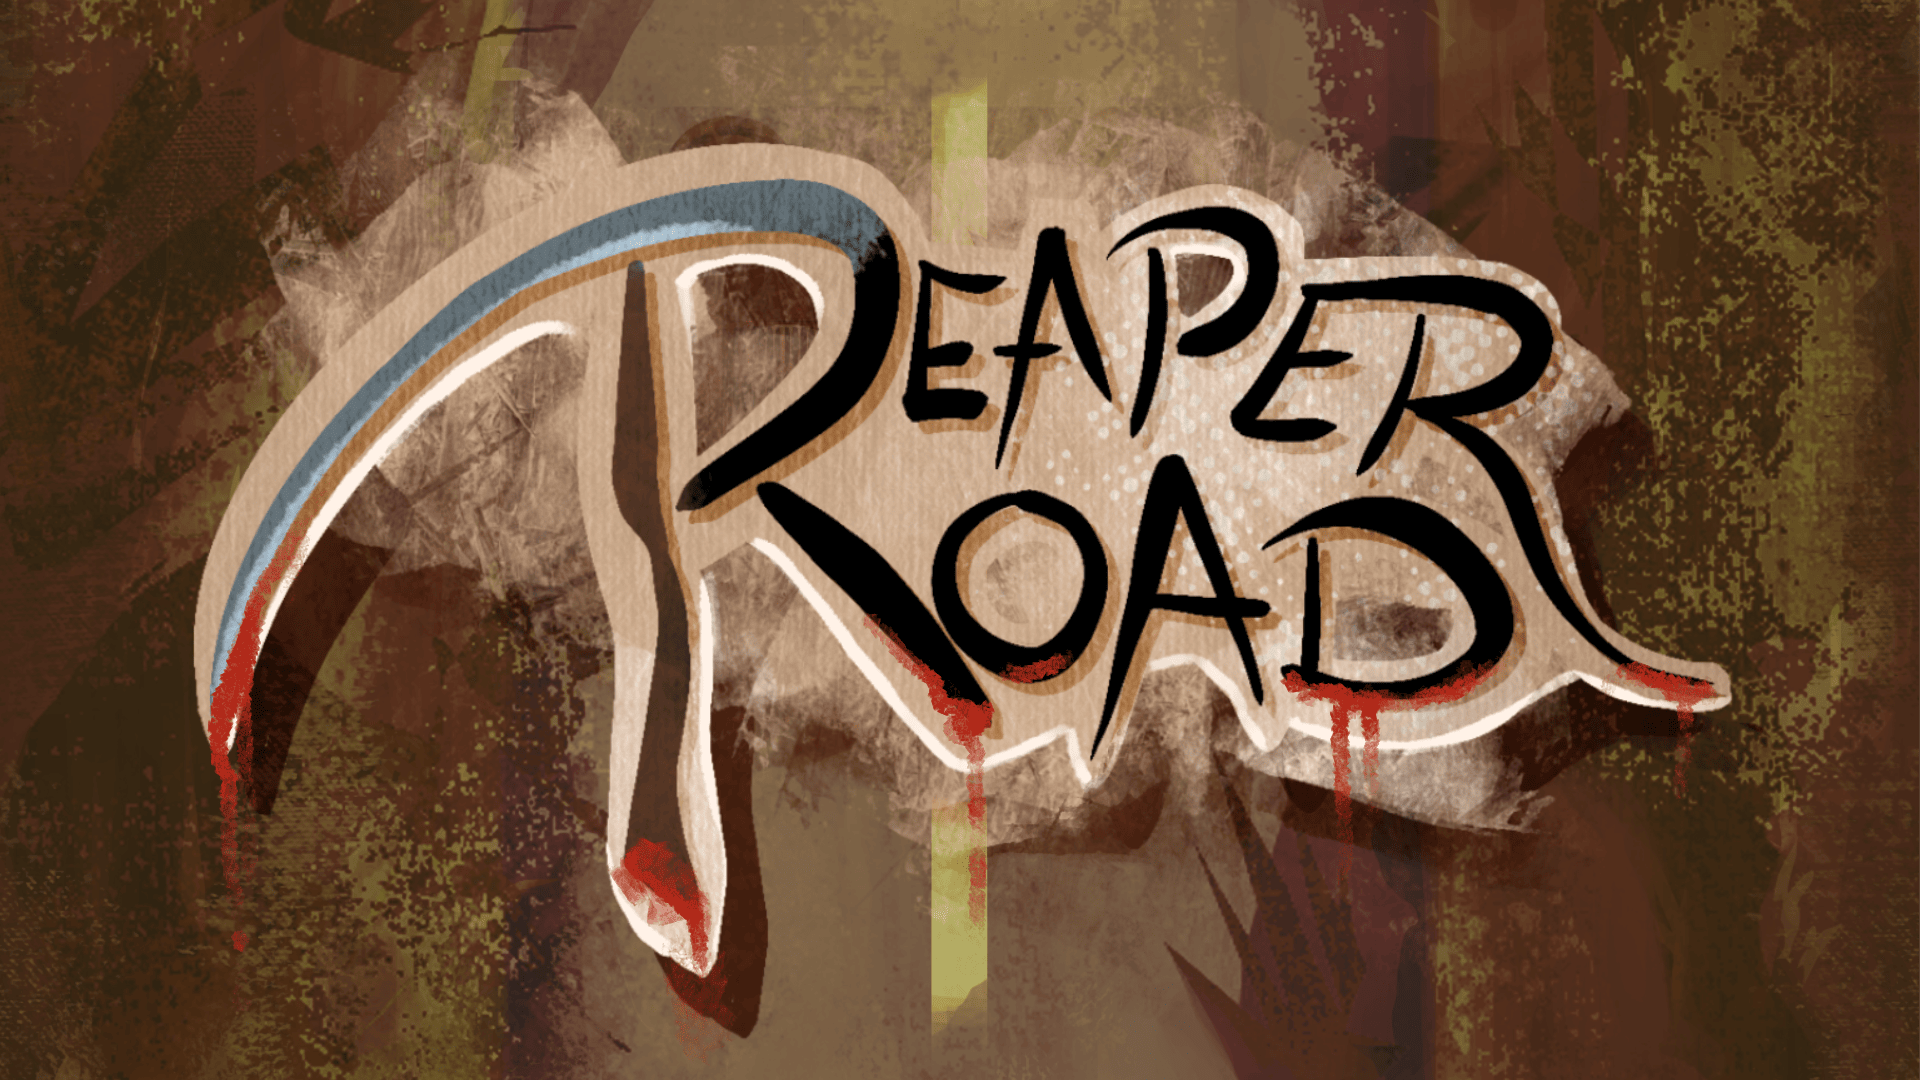 Reaper Road